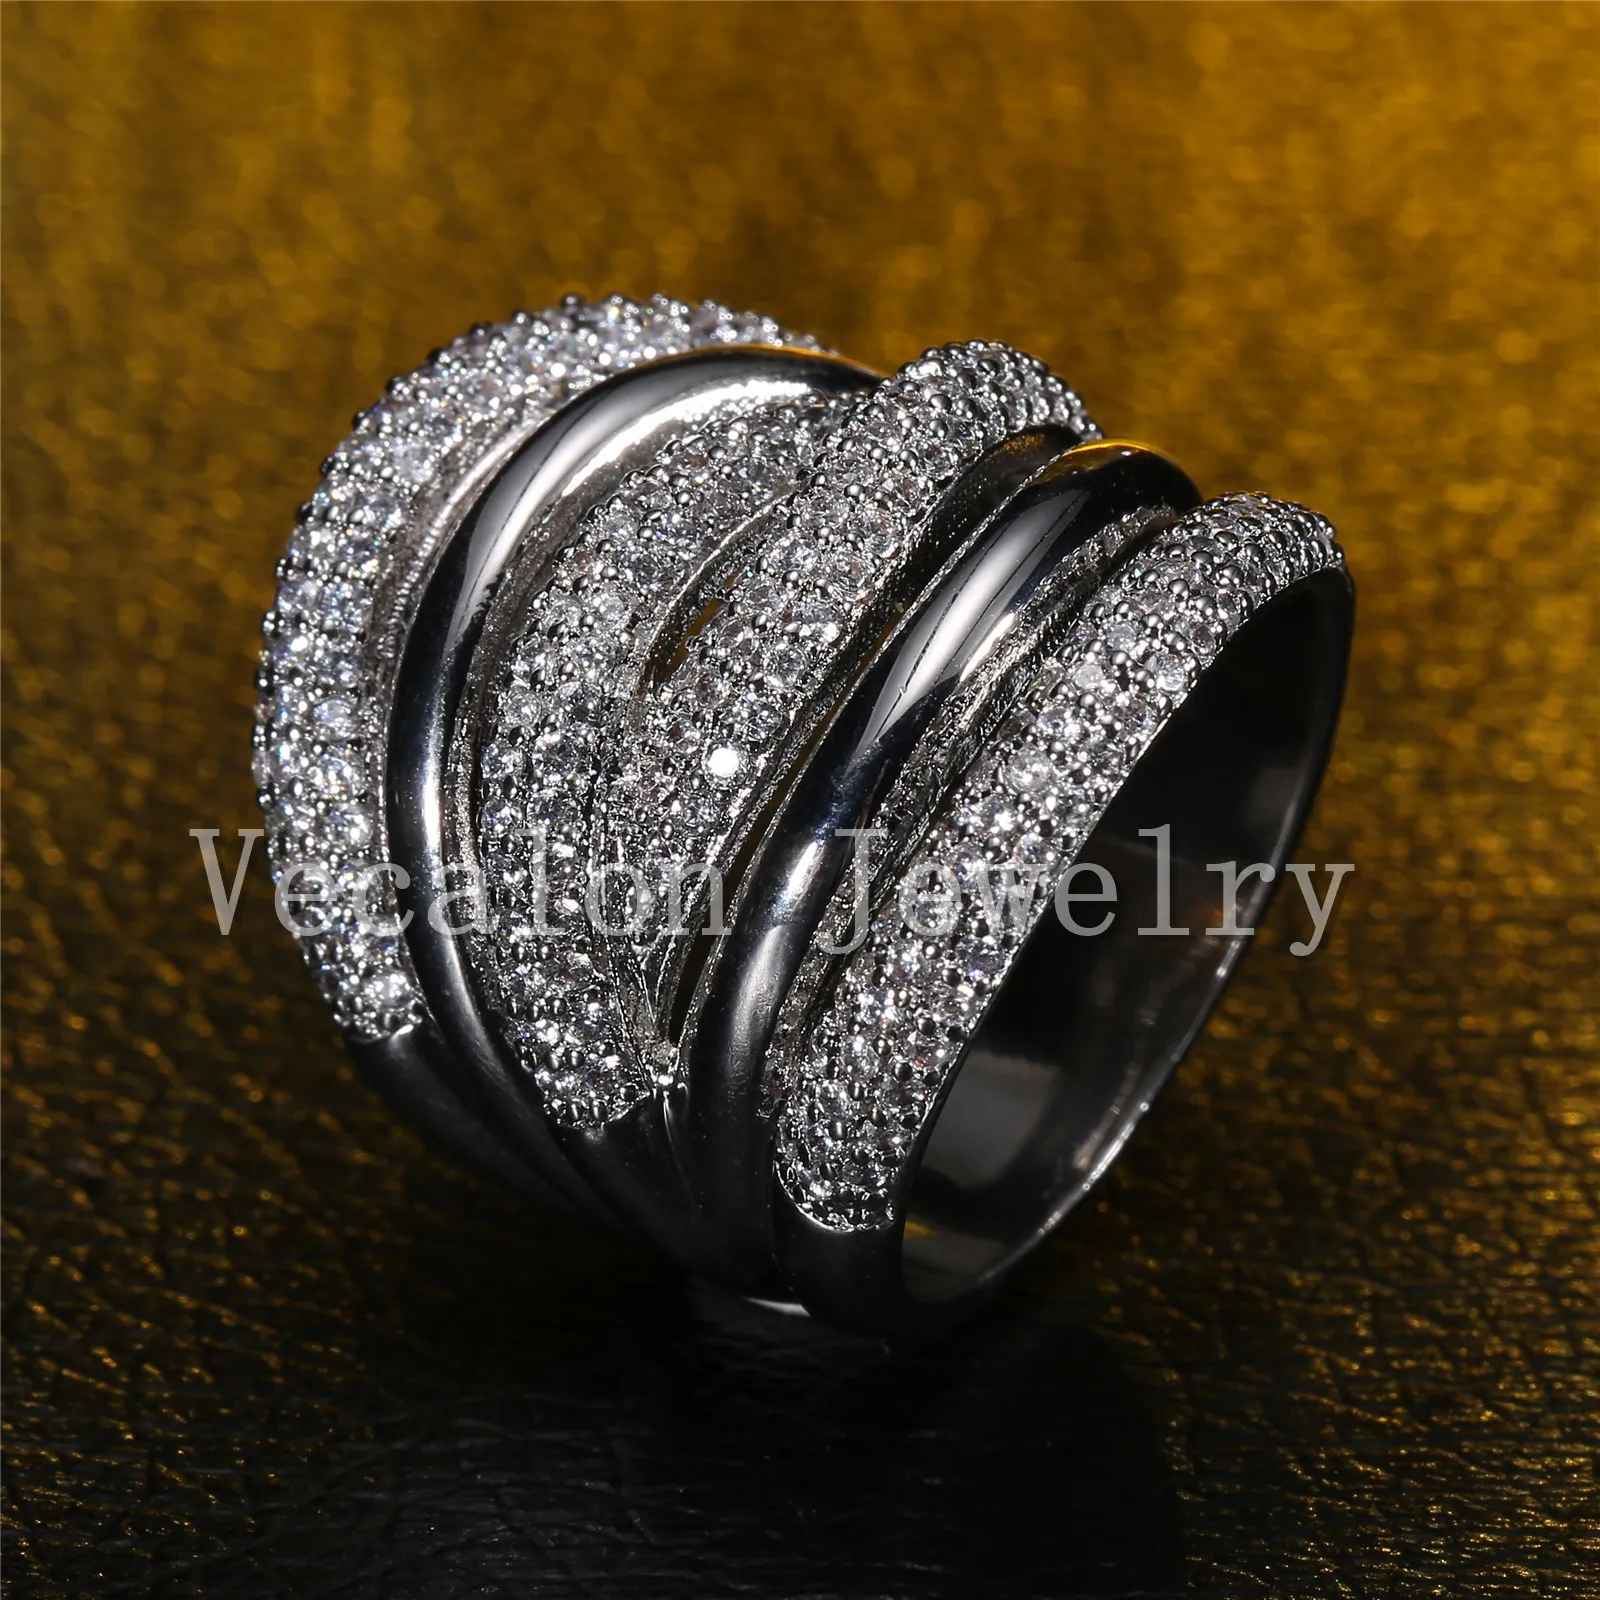 ベカロン舗装セットTopazシミュレートされたダイヤモンドCZクロスエンゲージメント結婚指輪14ktホワイトゴールド充填女性バンドリング